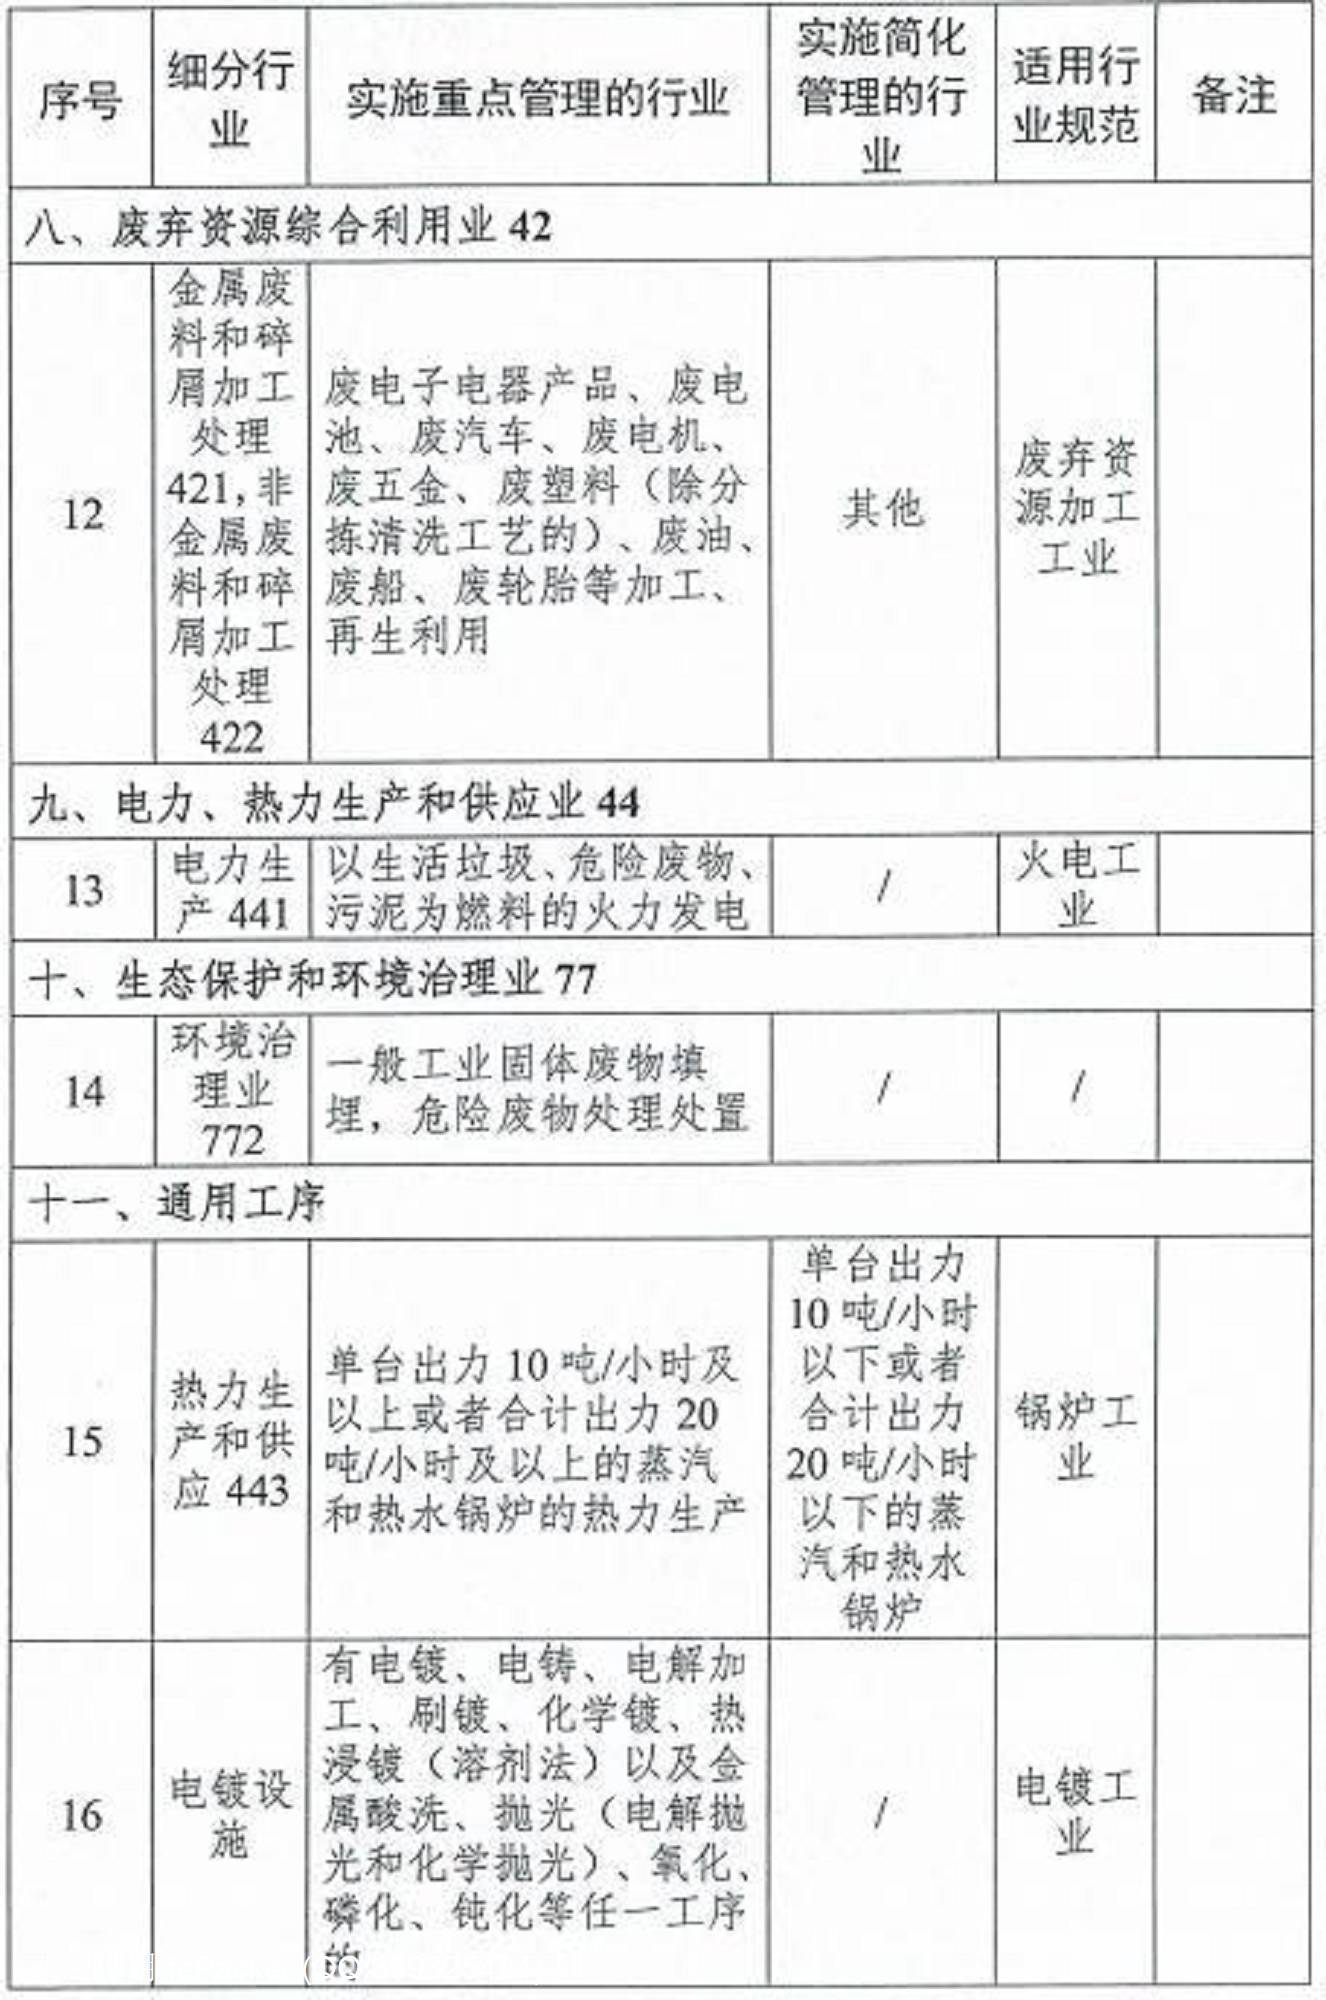 广西壮族自治区生态环境厅关于开展畜禽养殖等16 个行业排污许可证管理工作的通告